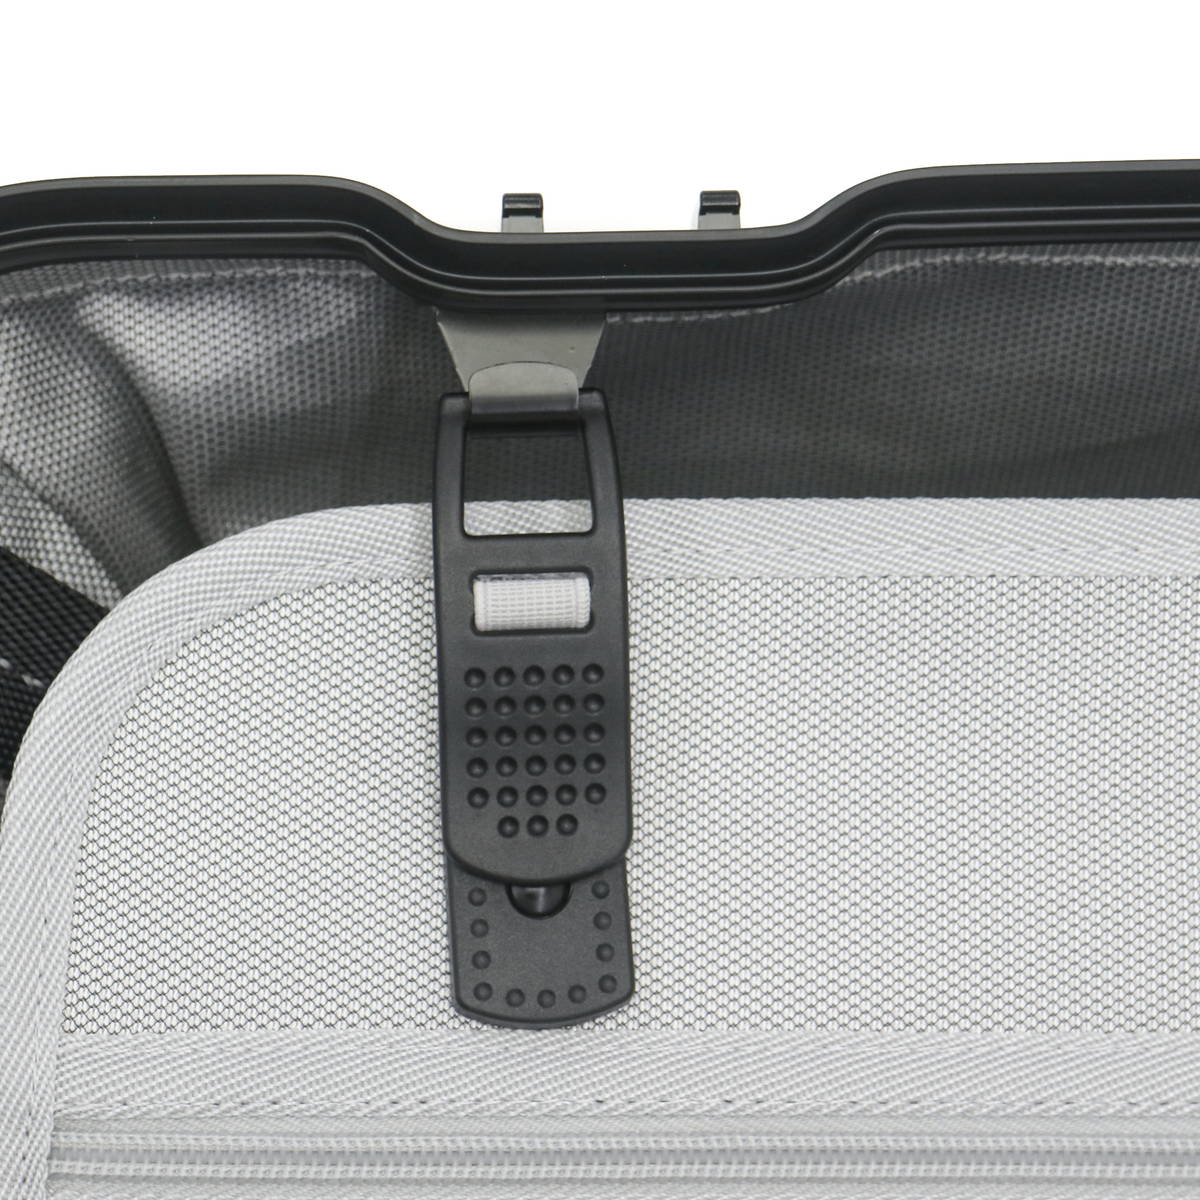 セール35%OFF】RICARDO リカルド Aileron 20-inch Spinner Suitcase スーツケース 40L AIL-20- 4WB｜【正規販売店】カバン・小物の専門店のギャレリアモール